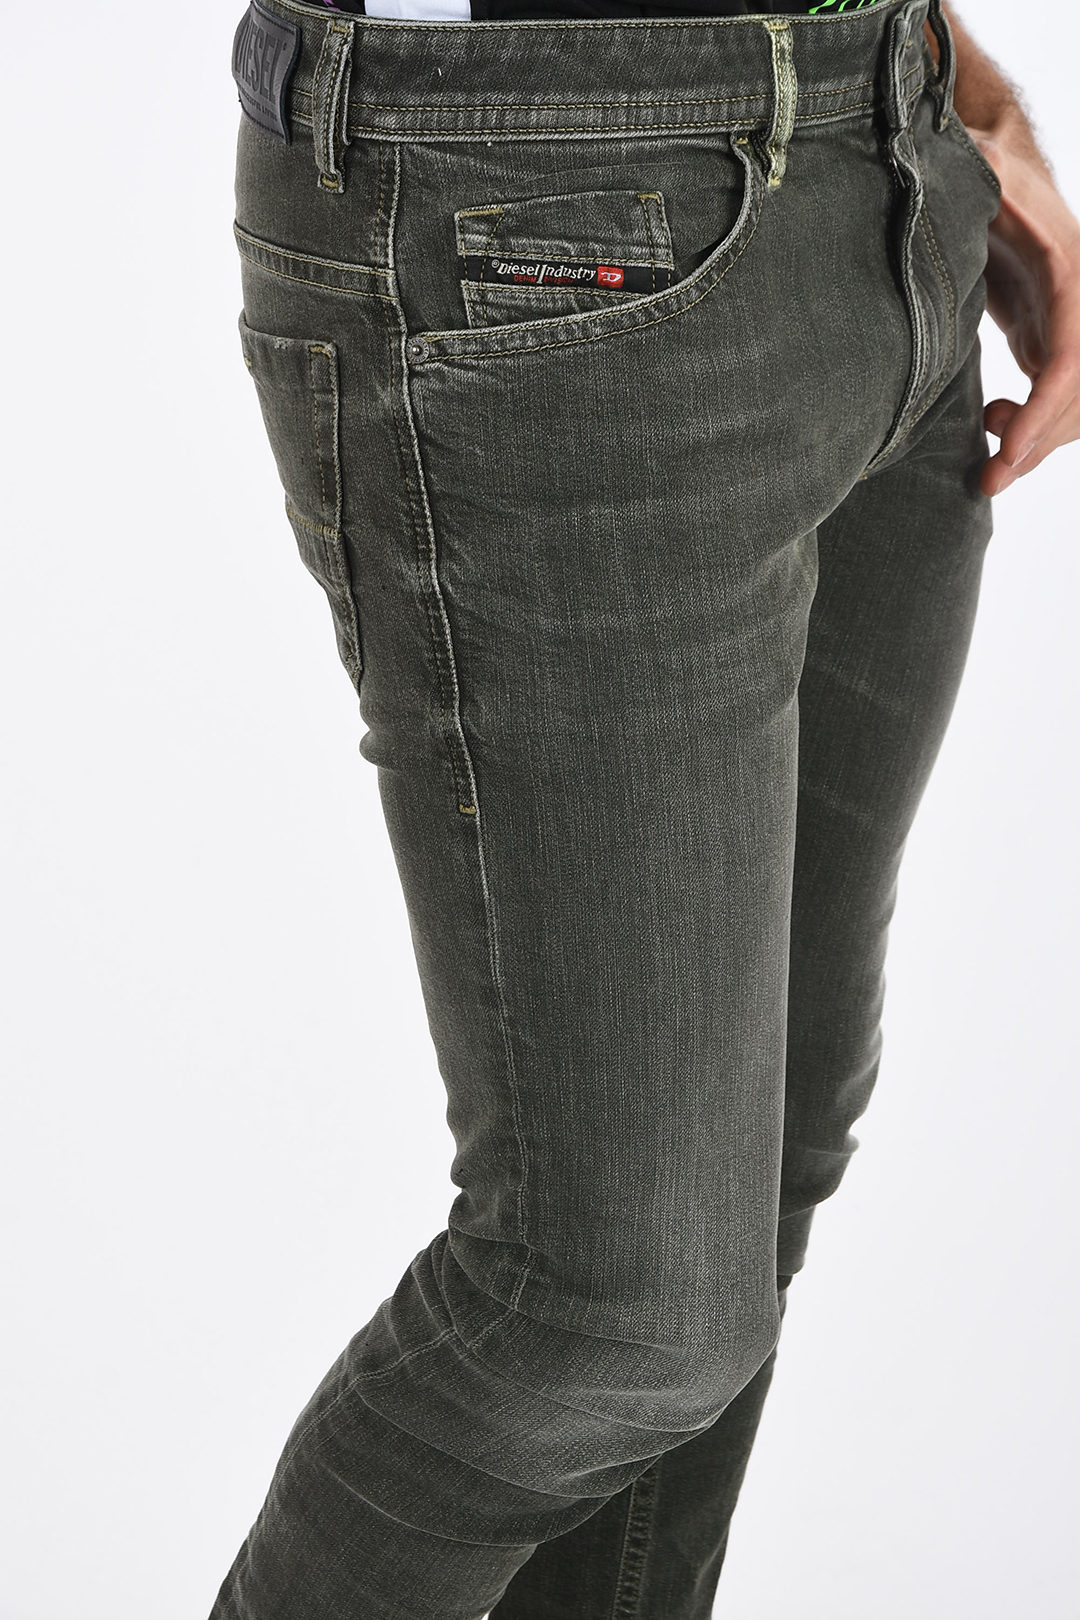 Allergie etnisch Verdeel Diesel 16cm Slim Fit THOMMER-SP Jeans L32 men - Glamood Outlet